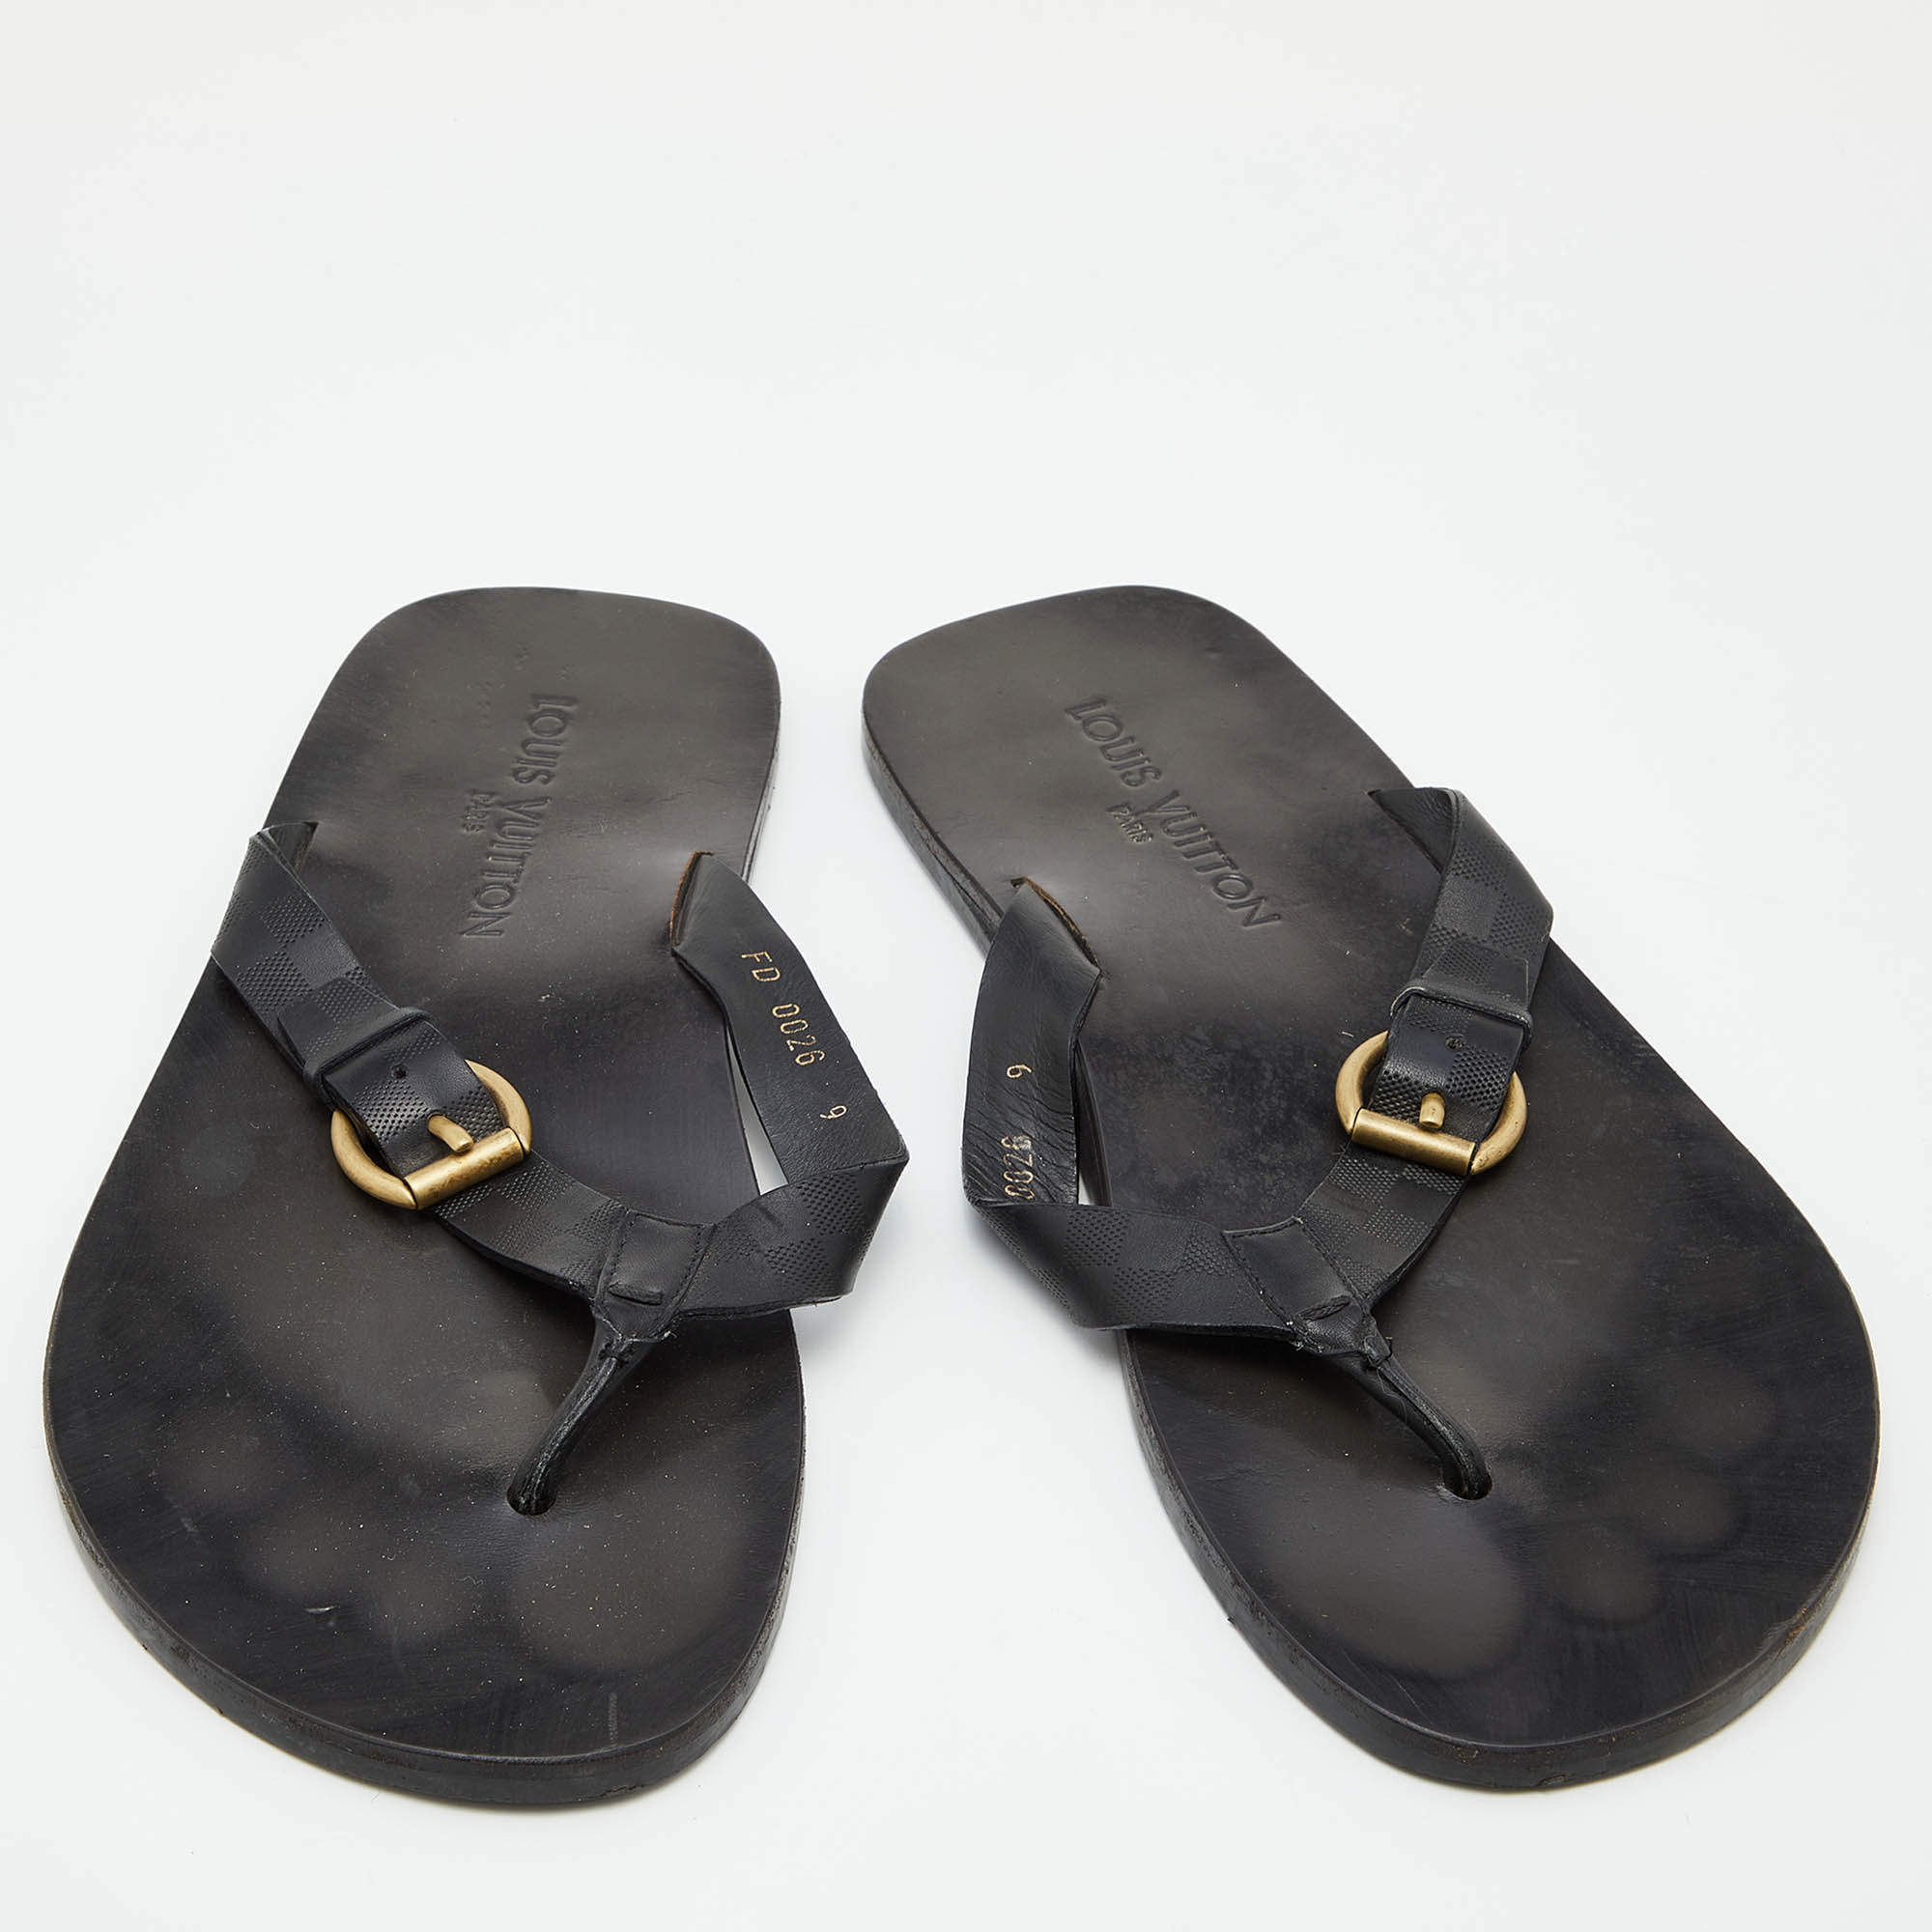 LOUIS VUITTON Damier Azur Leather THAMES Thong Sandals size 36 Retail $550